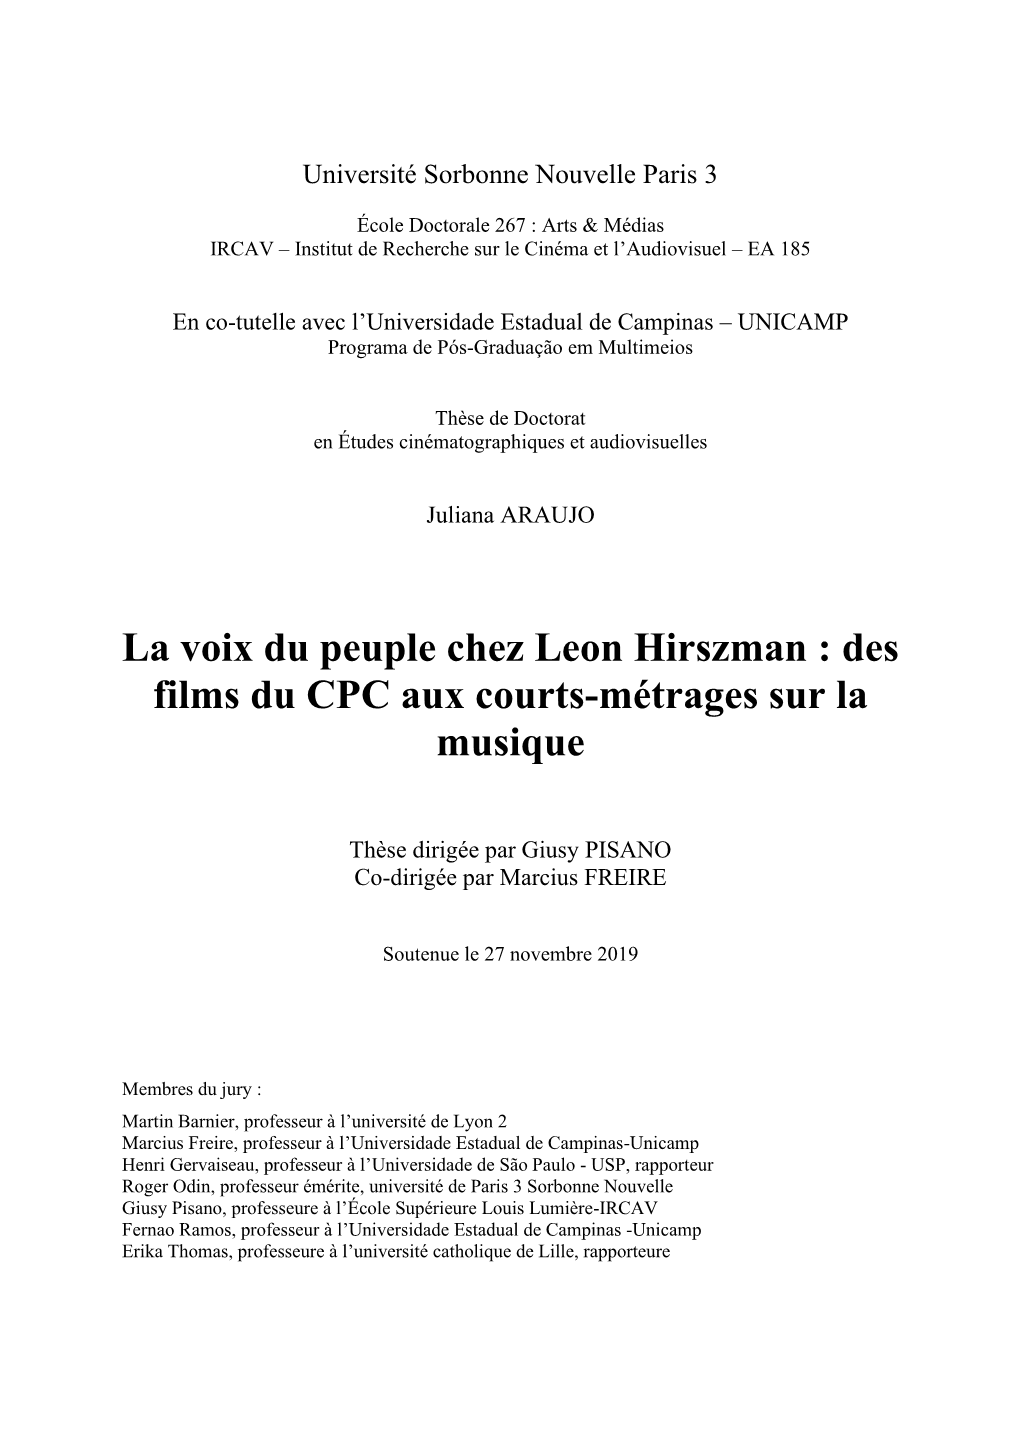 La Voix Du Peuple Chez Leon Hirszman : Des Films Du CPC Aux Courts-Métrages Sur La Musique